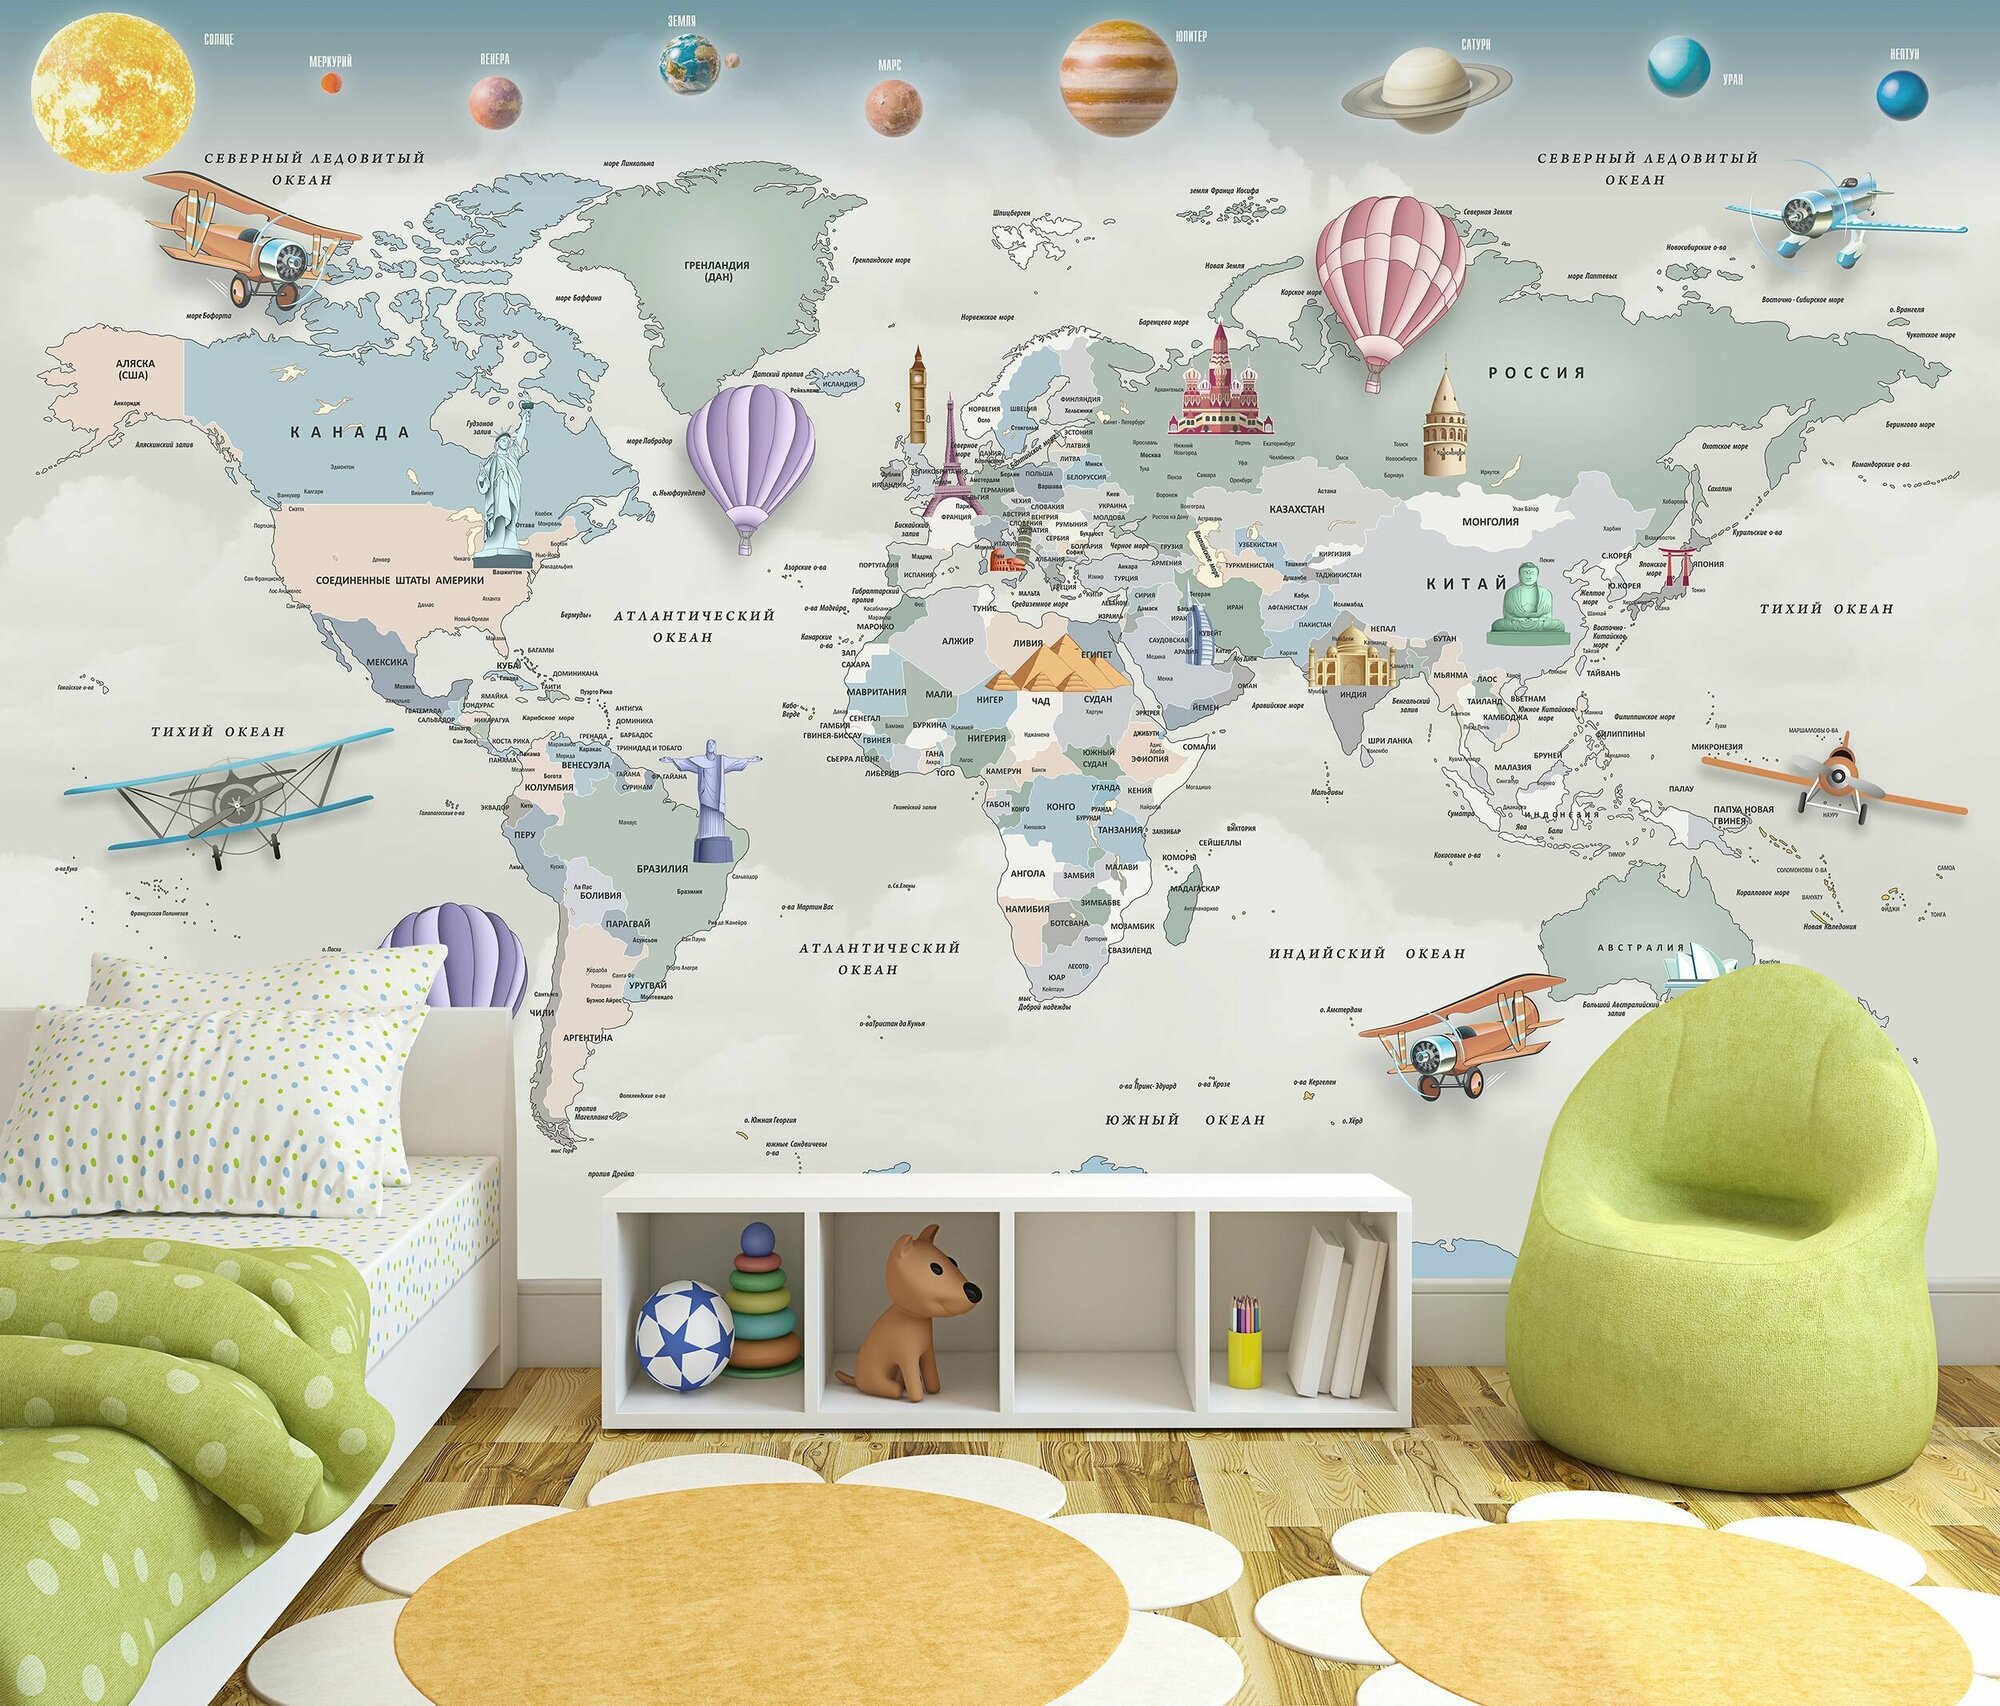 Фотообои флизелиновые 400х270см. на стену. Серия MAPS ARTDELUXE. 3д детская карта мира и планеты. Обои дизайнерские, эксклюзивные для детской комнаты.